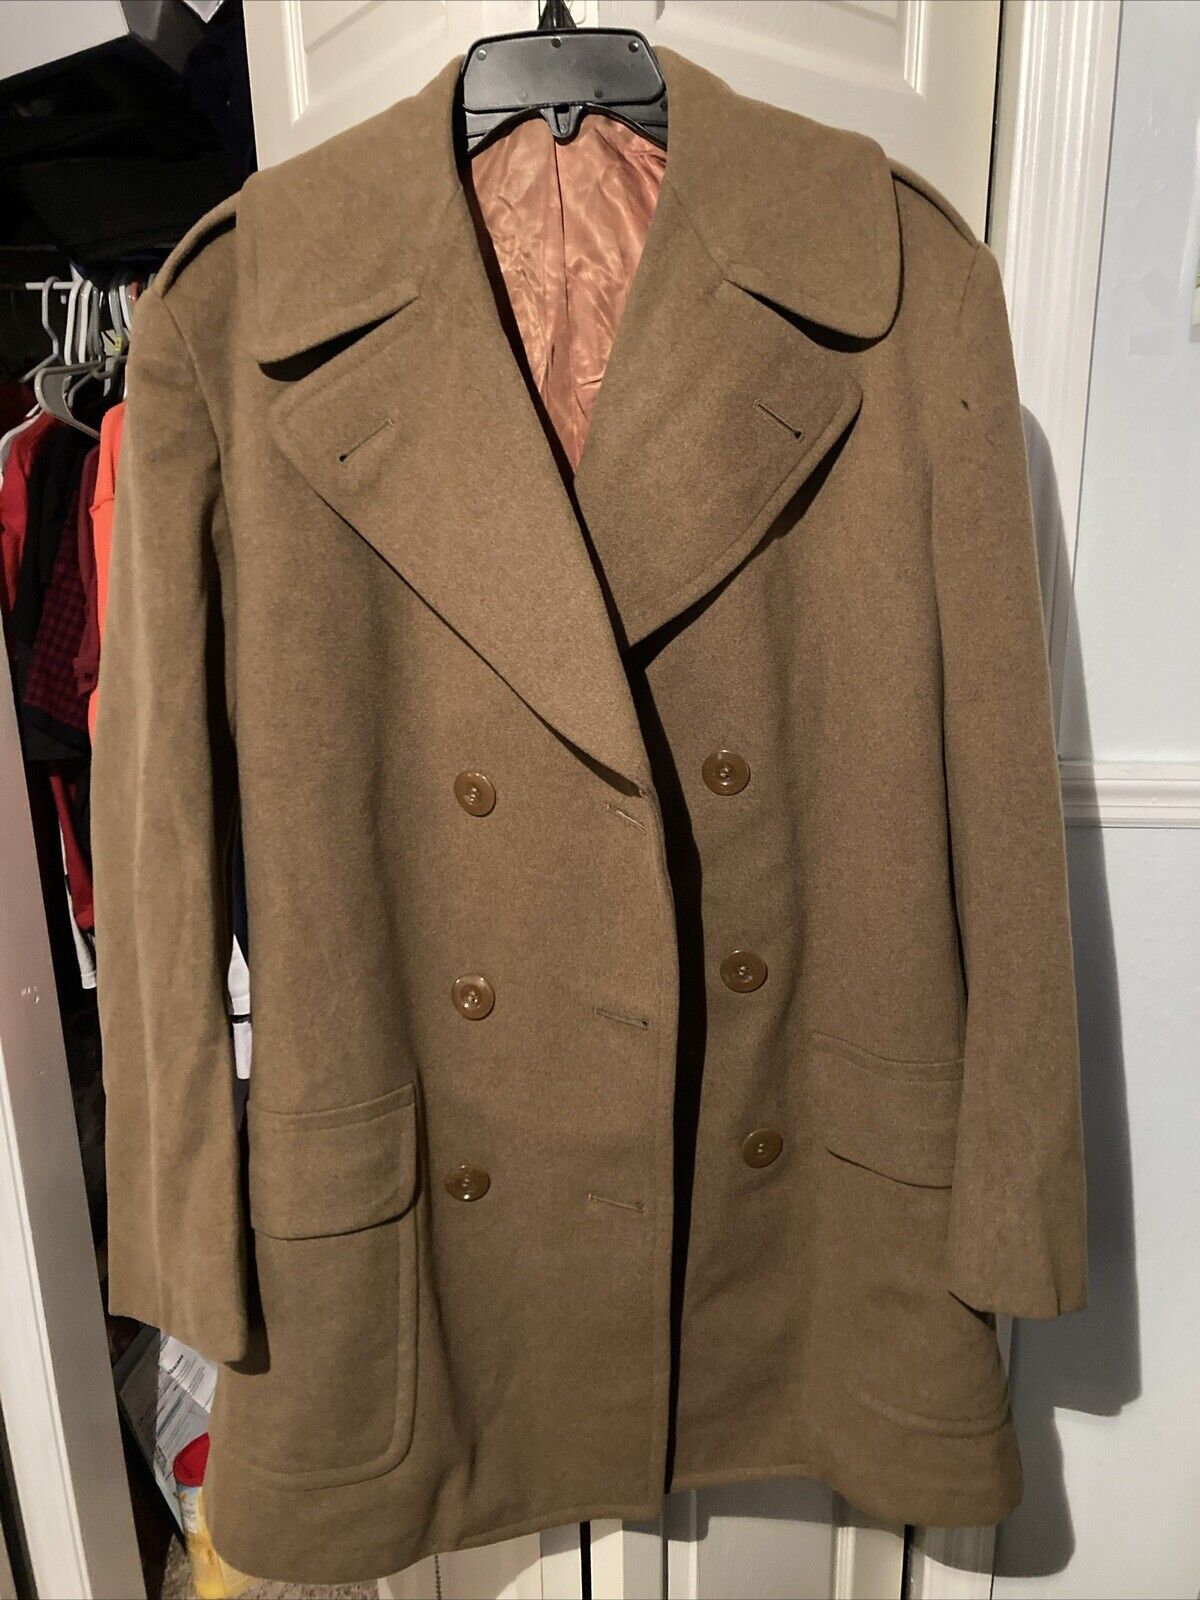 Regulation Army Officer Short Overcoat 38L 1944 Vintage Original WWII